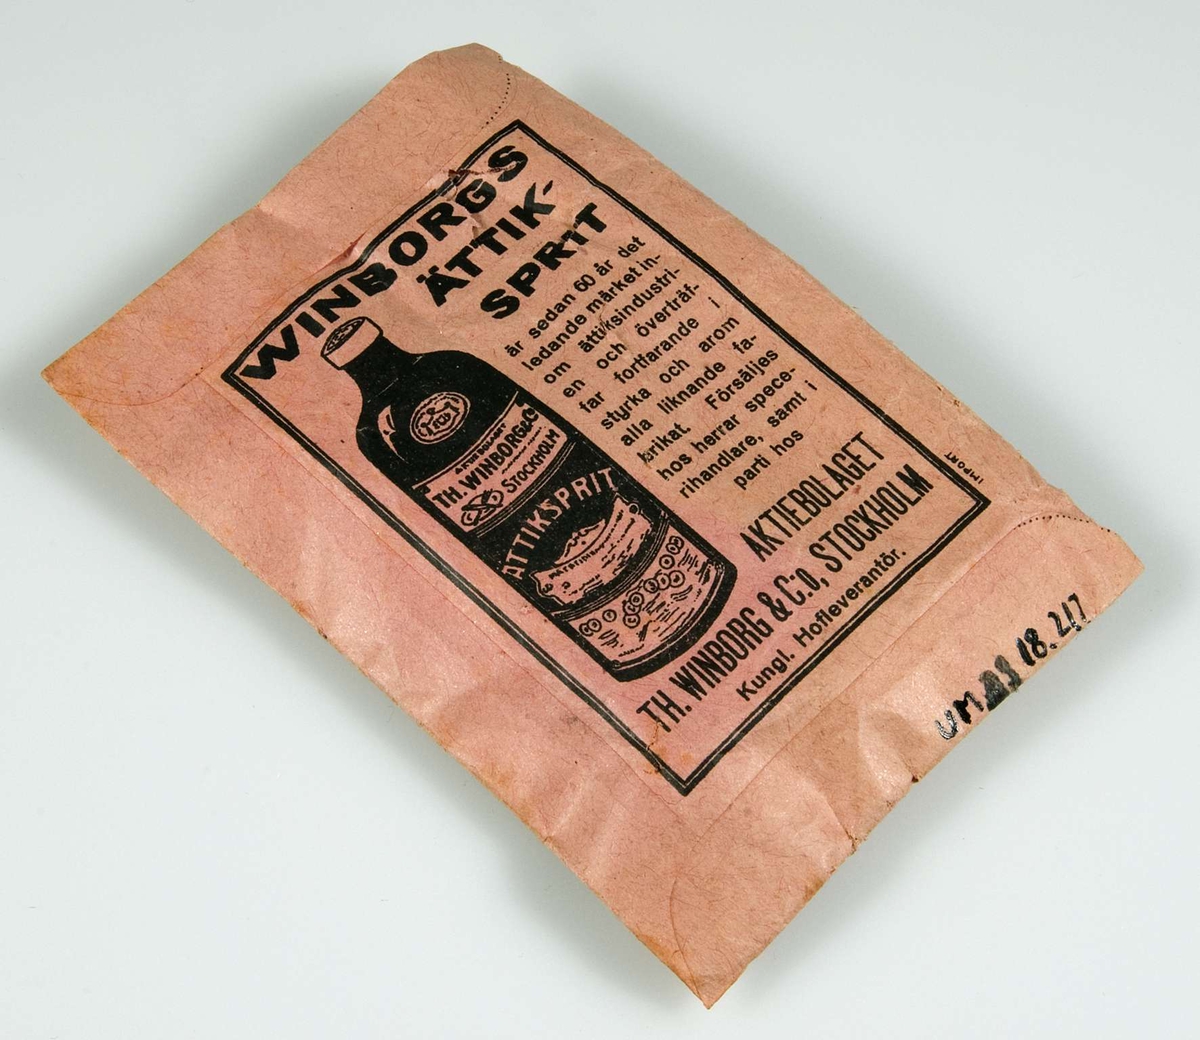 Rosa papperspåse innehållande klarmedel till kaffe. Svart tryck: "PRIMA PREPARERADT KAFFE-KLARMEDEL" samt AB Winborgs fabriksmärke. På baksidan reklam för Winborgs ättiksprit. 